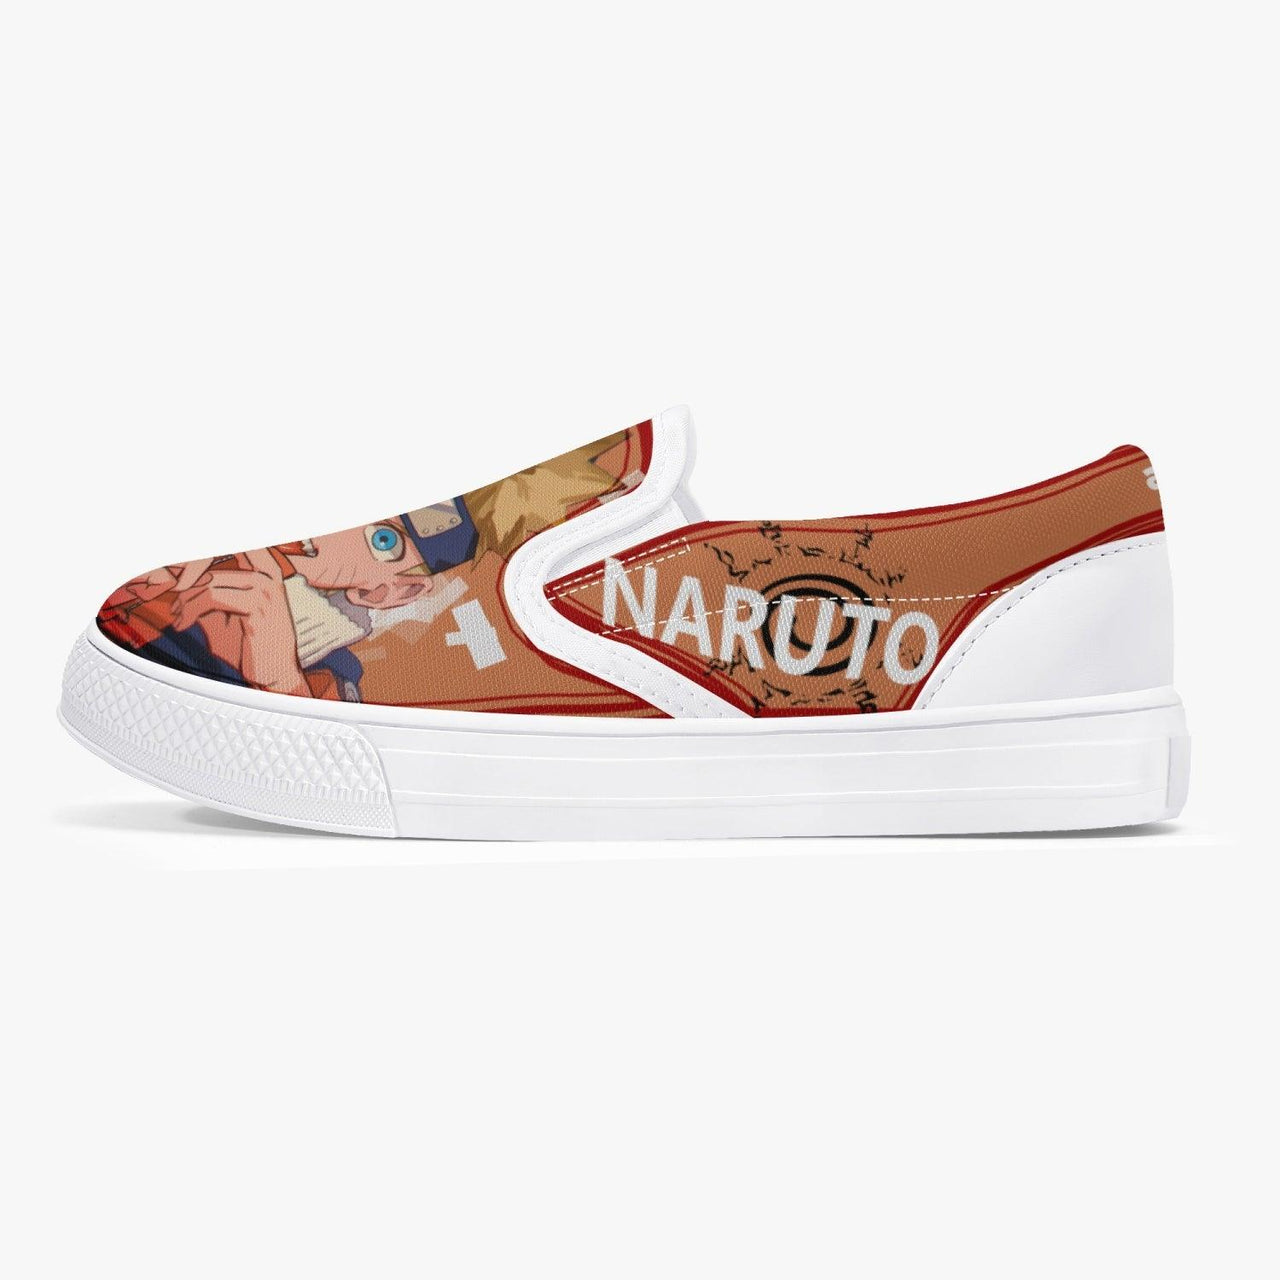 Naruto Shippuden Naruto Kids Slip Ons Anime Shoes _ Naruto _ Ayuko